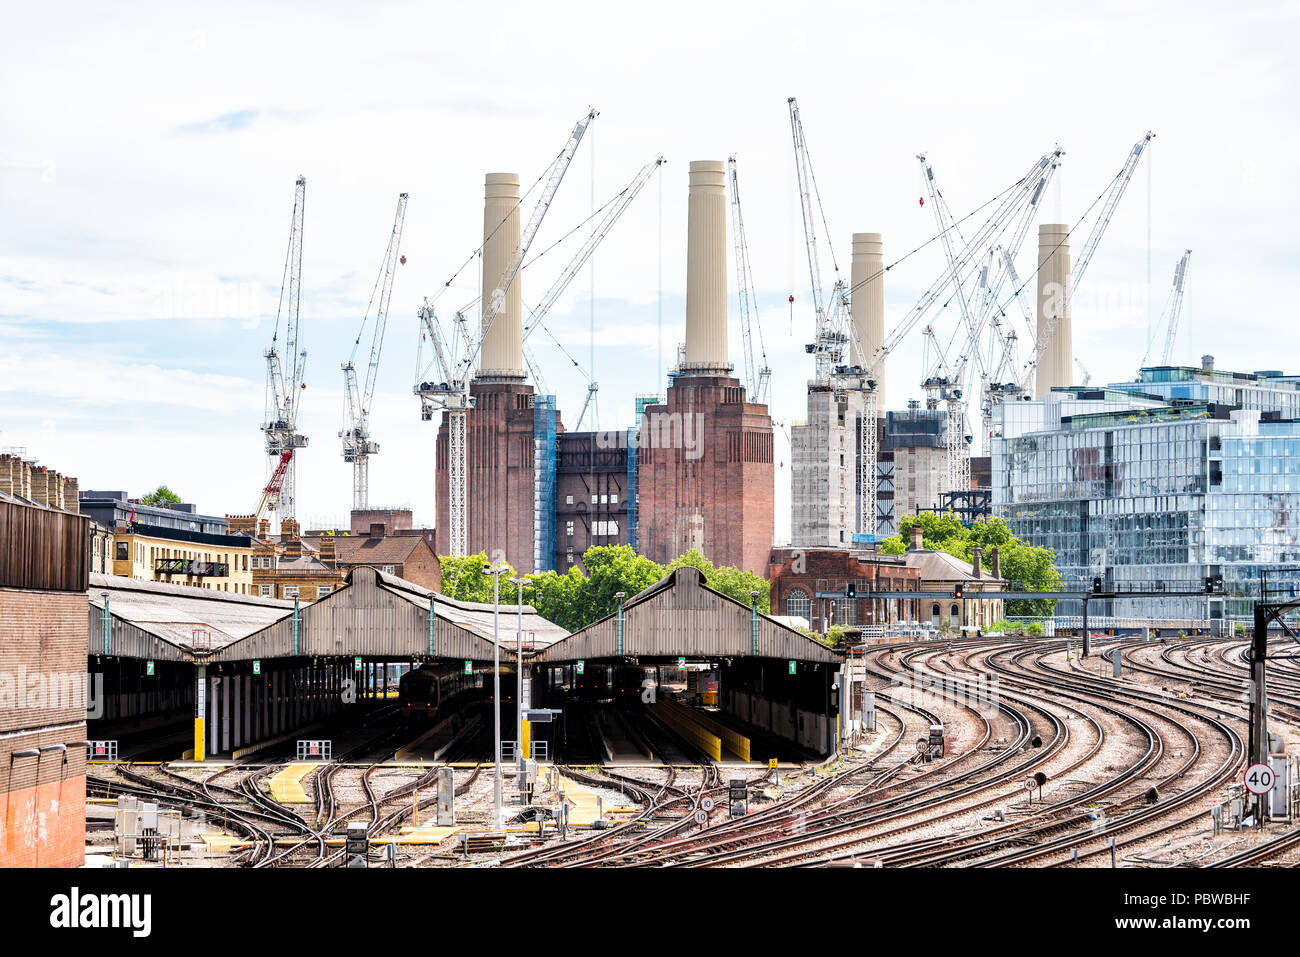 London, UK - 23. Juni 2018: Industrielle Eisenbahn Verkehr Titel im Vereinigten Königreich, Pimlico Viertel Viertel, Äbte Manor zur Victoria Station, c Stockfoto